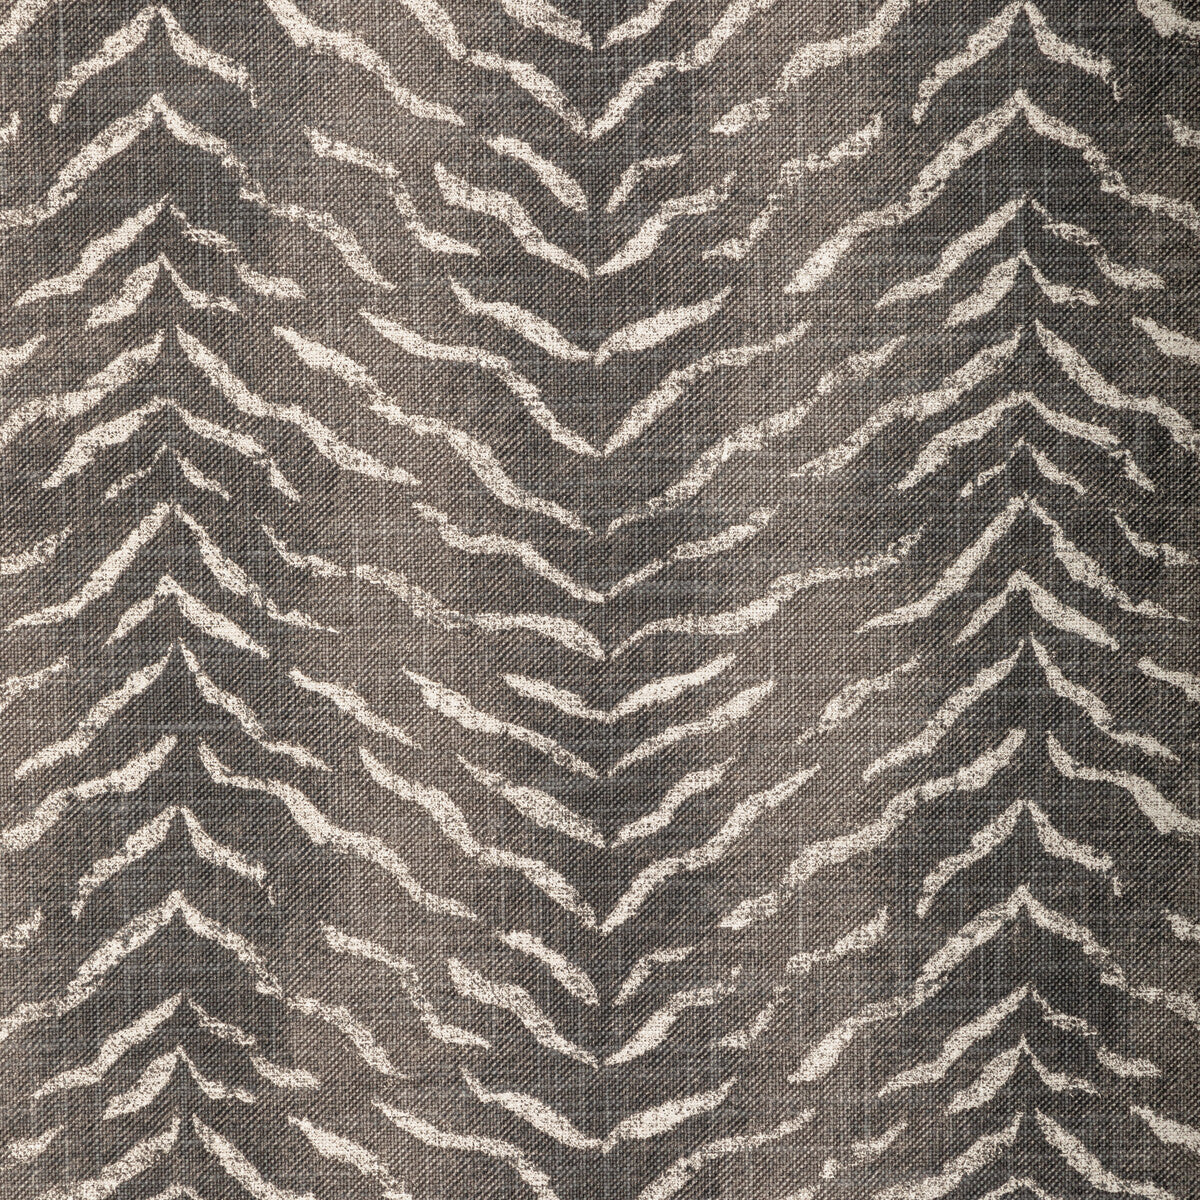 Kravet Basics fabric in kuda-814 color - pattern KUDA.814.0 - by Kravet Basics